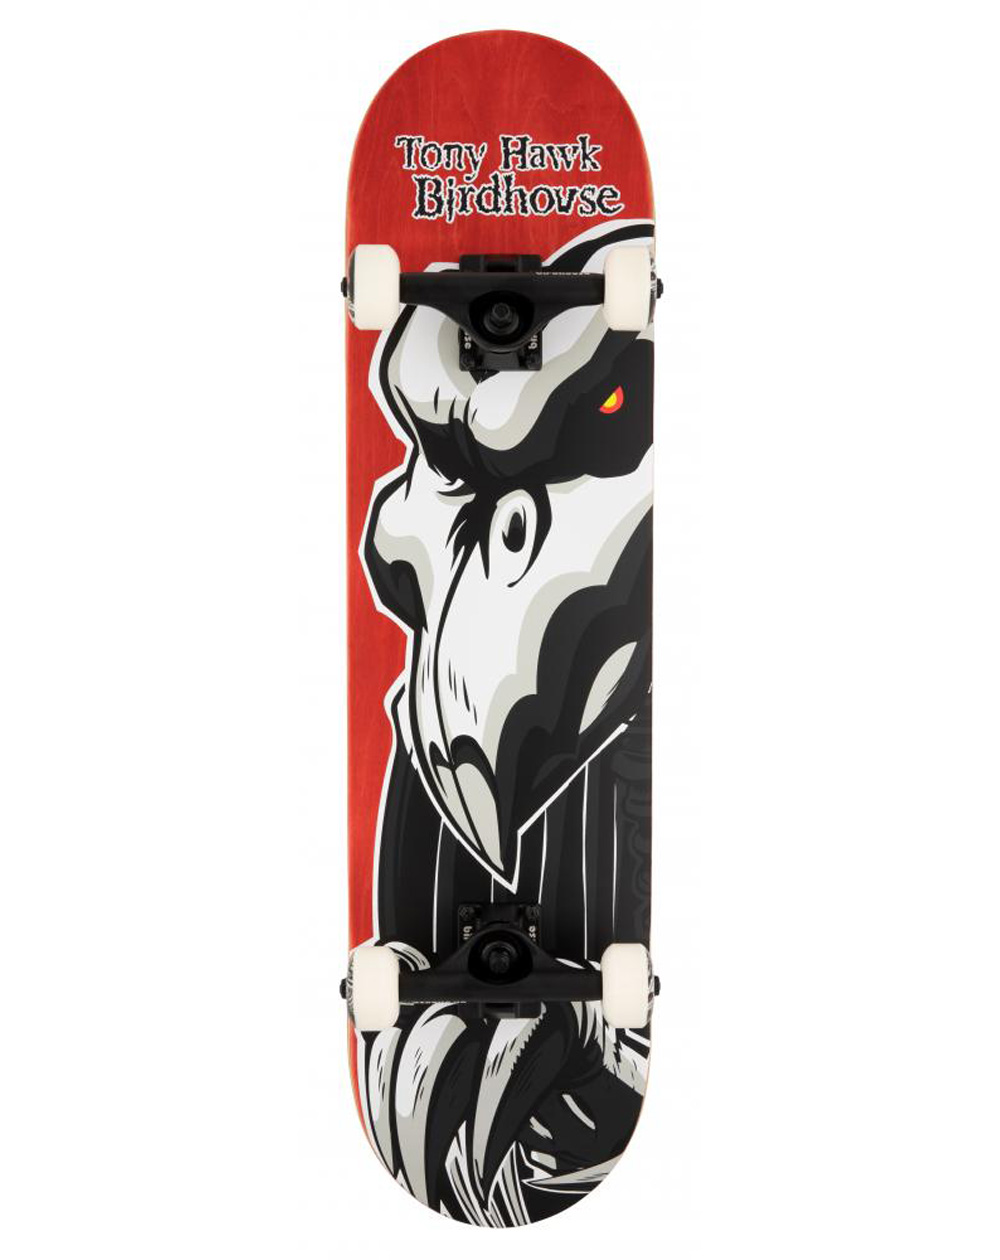 Birdhouse Skateboard Completo Hawk Falcon 2 8" Red